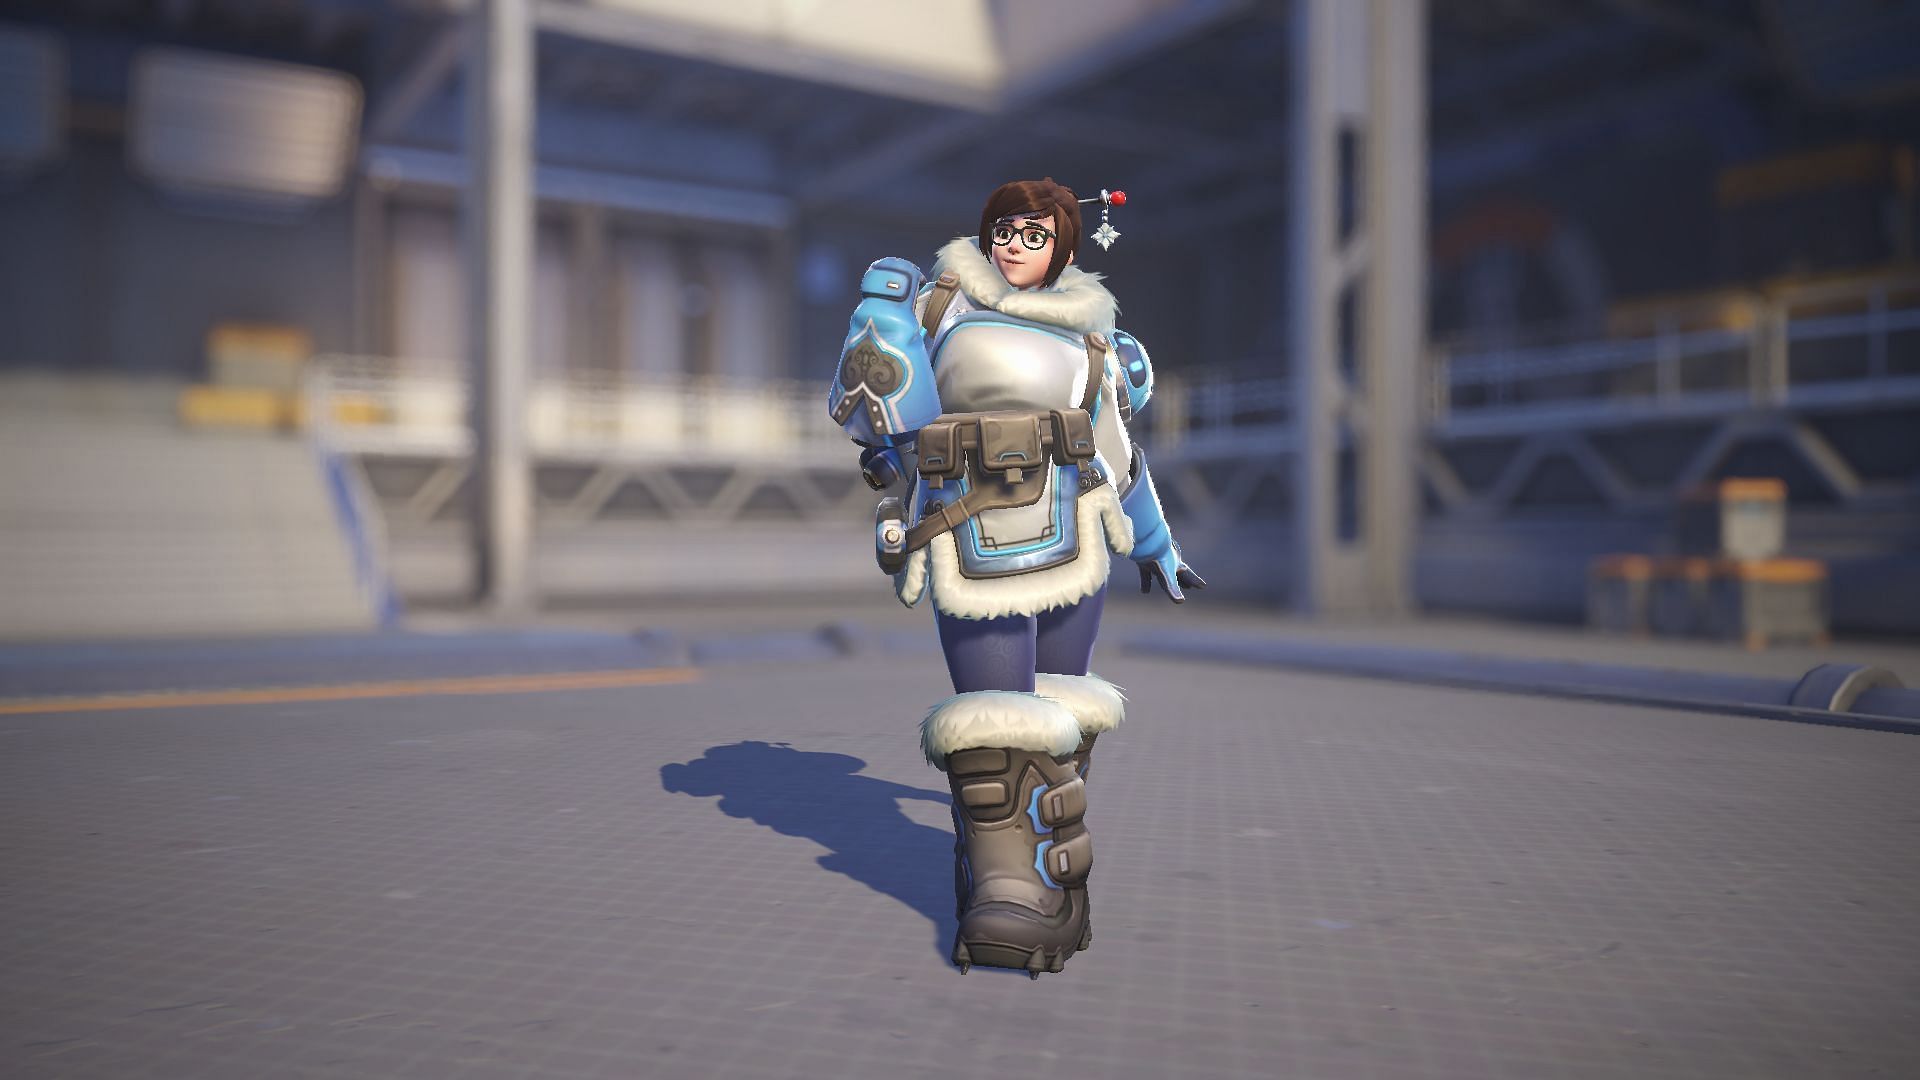 Mei excels in close-range combat (Image via Blizzard Entertainment)